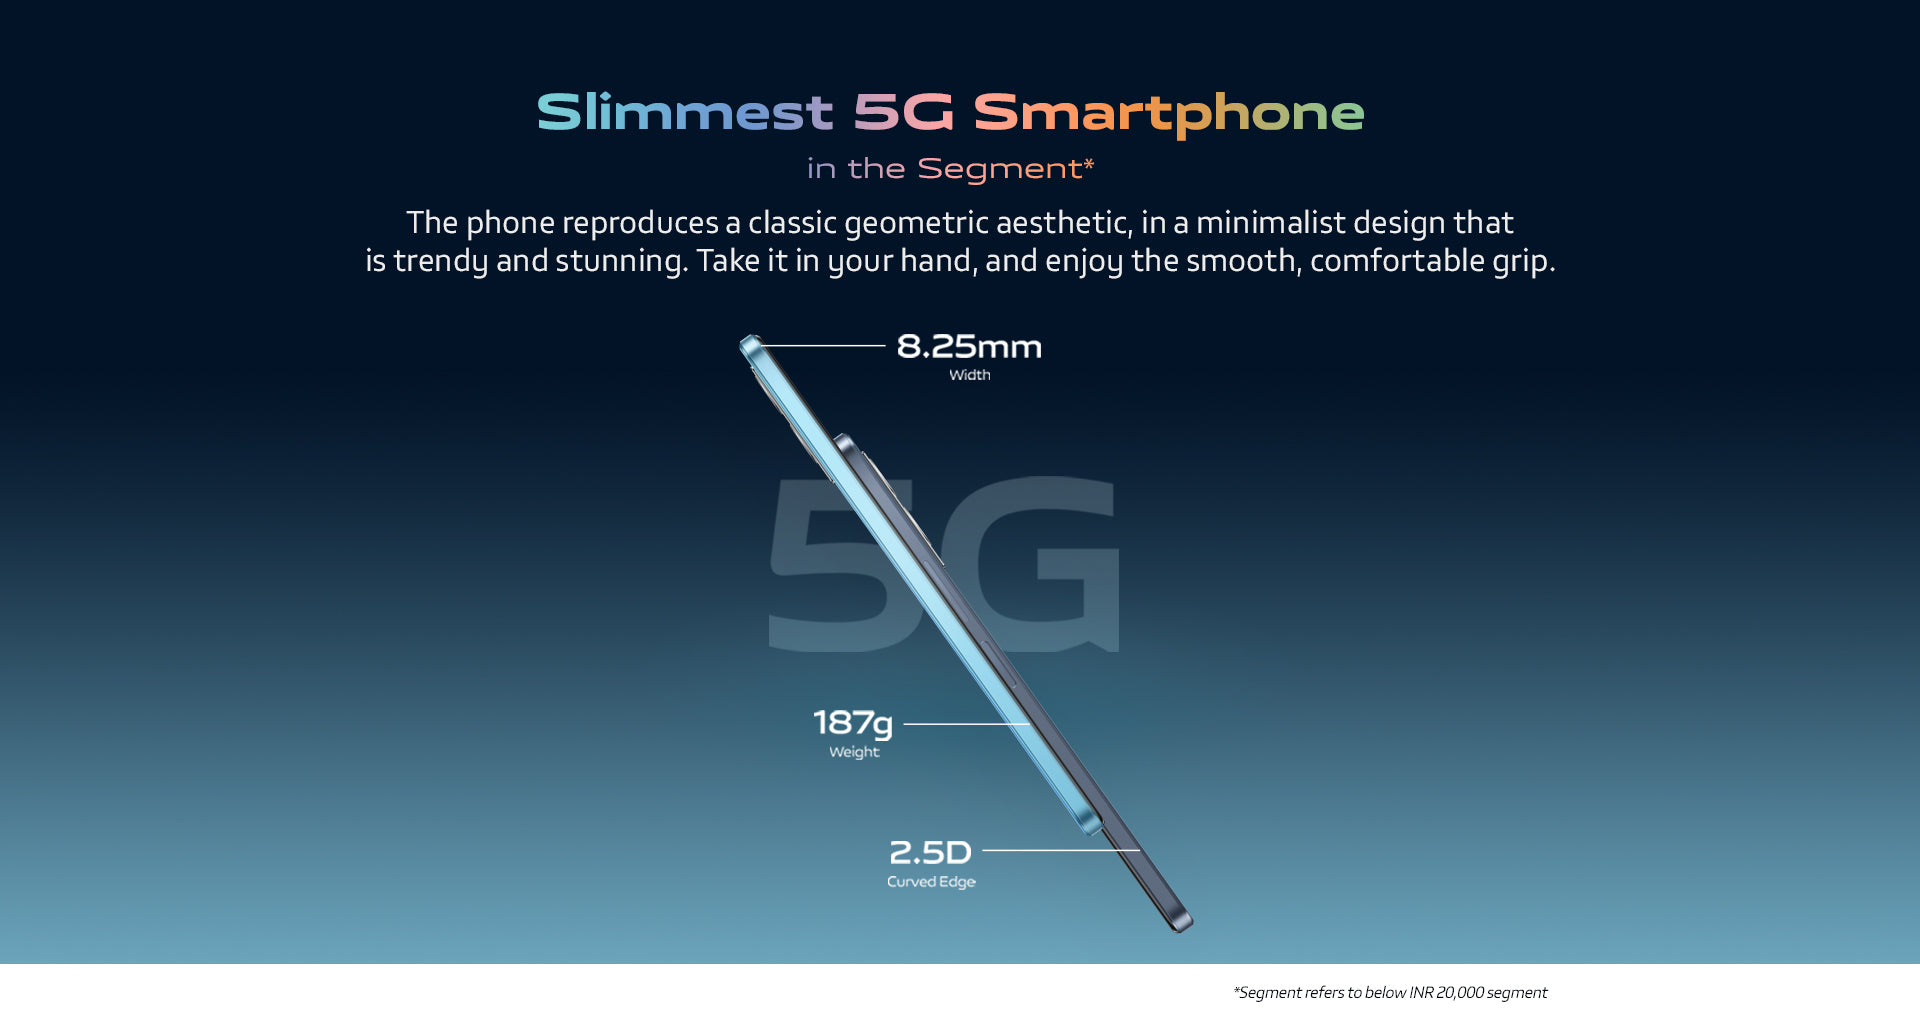 Slimmest 5G Smartphone